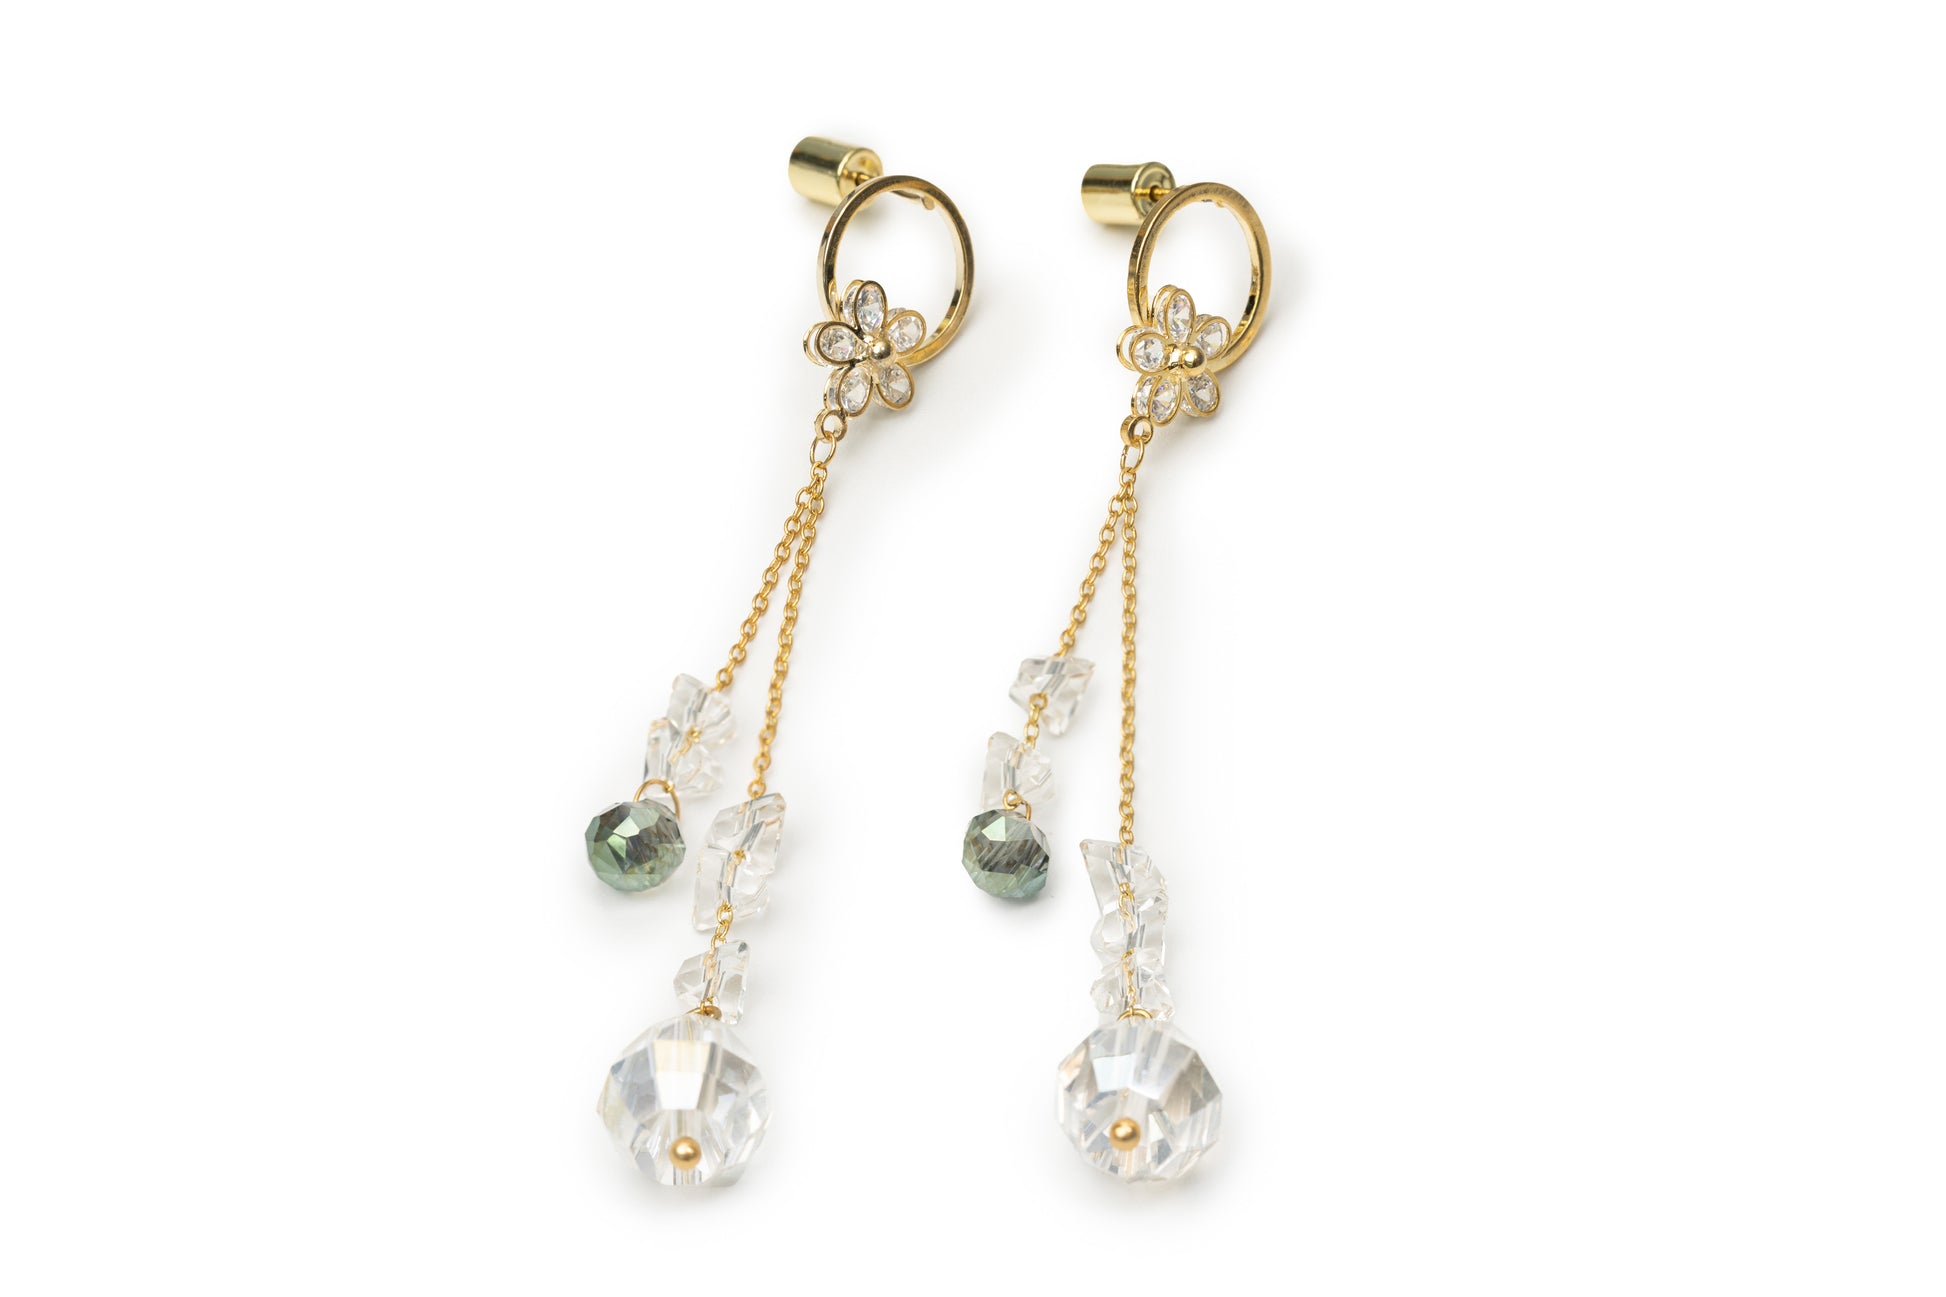 Planderful Transperent Stone Drop Earrings - Golden Drop Earrings